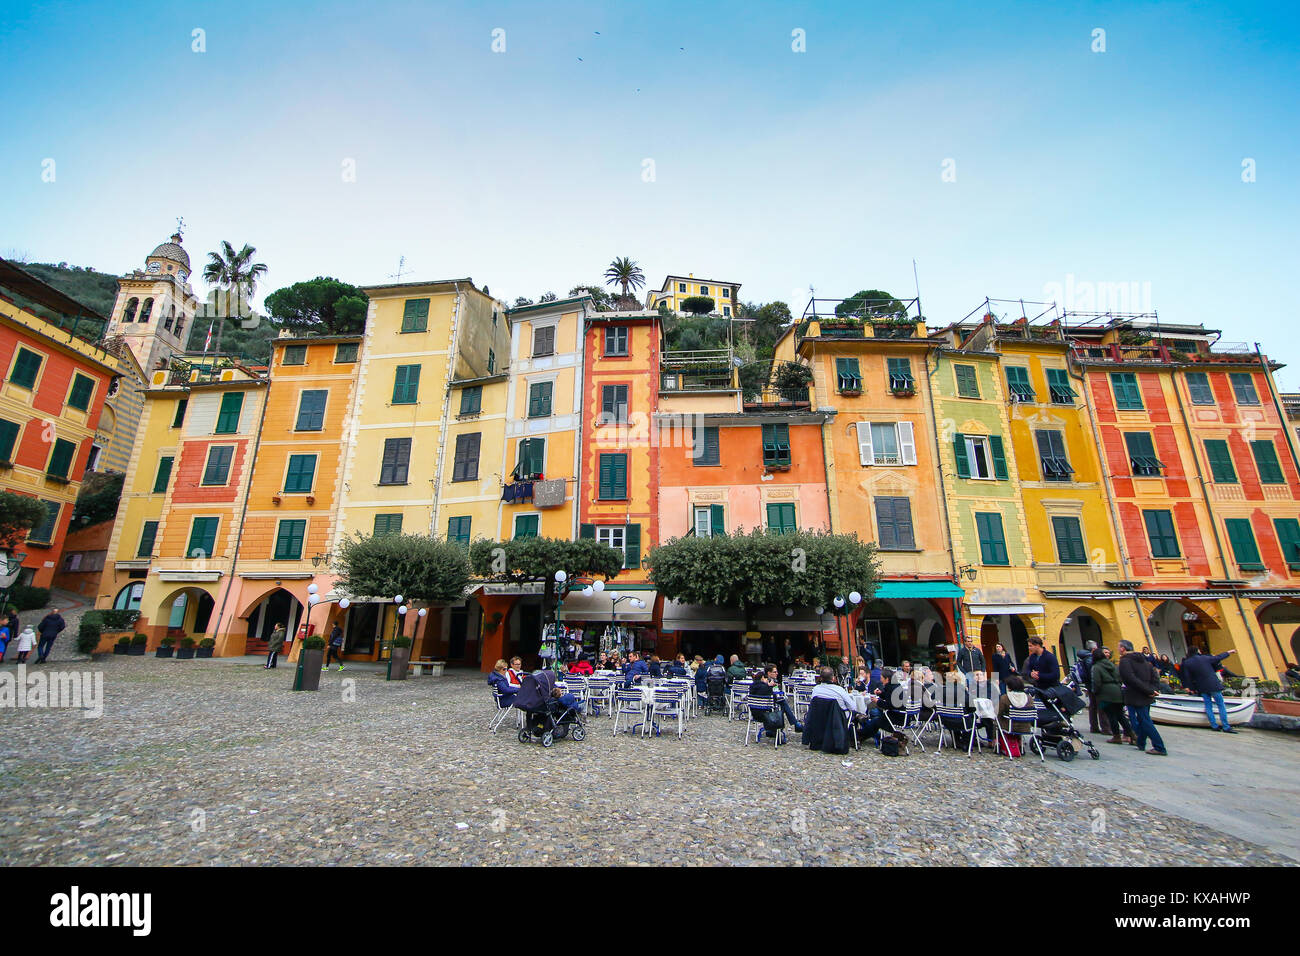 Bunte Häuser der Piazzetta von Portofino, Italien Stockfoto